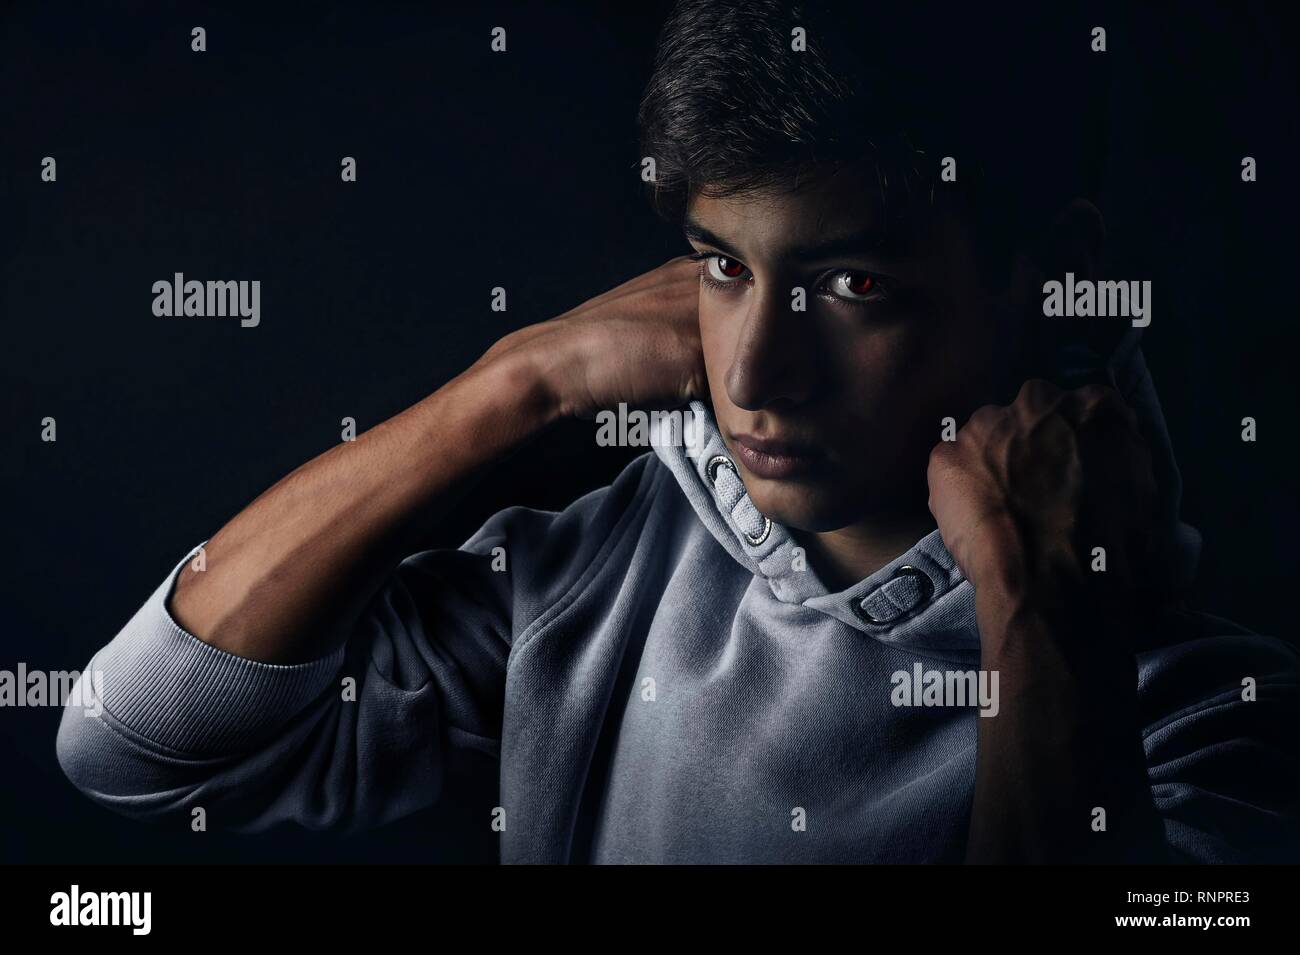 Garçon, adolescent, 14 ans, portrait, studio shot, Allemagne Banque D'Images